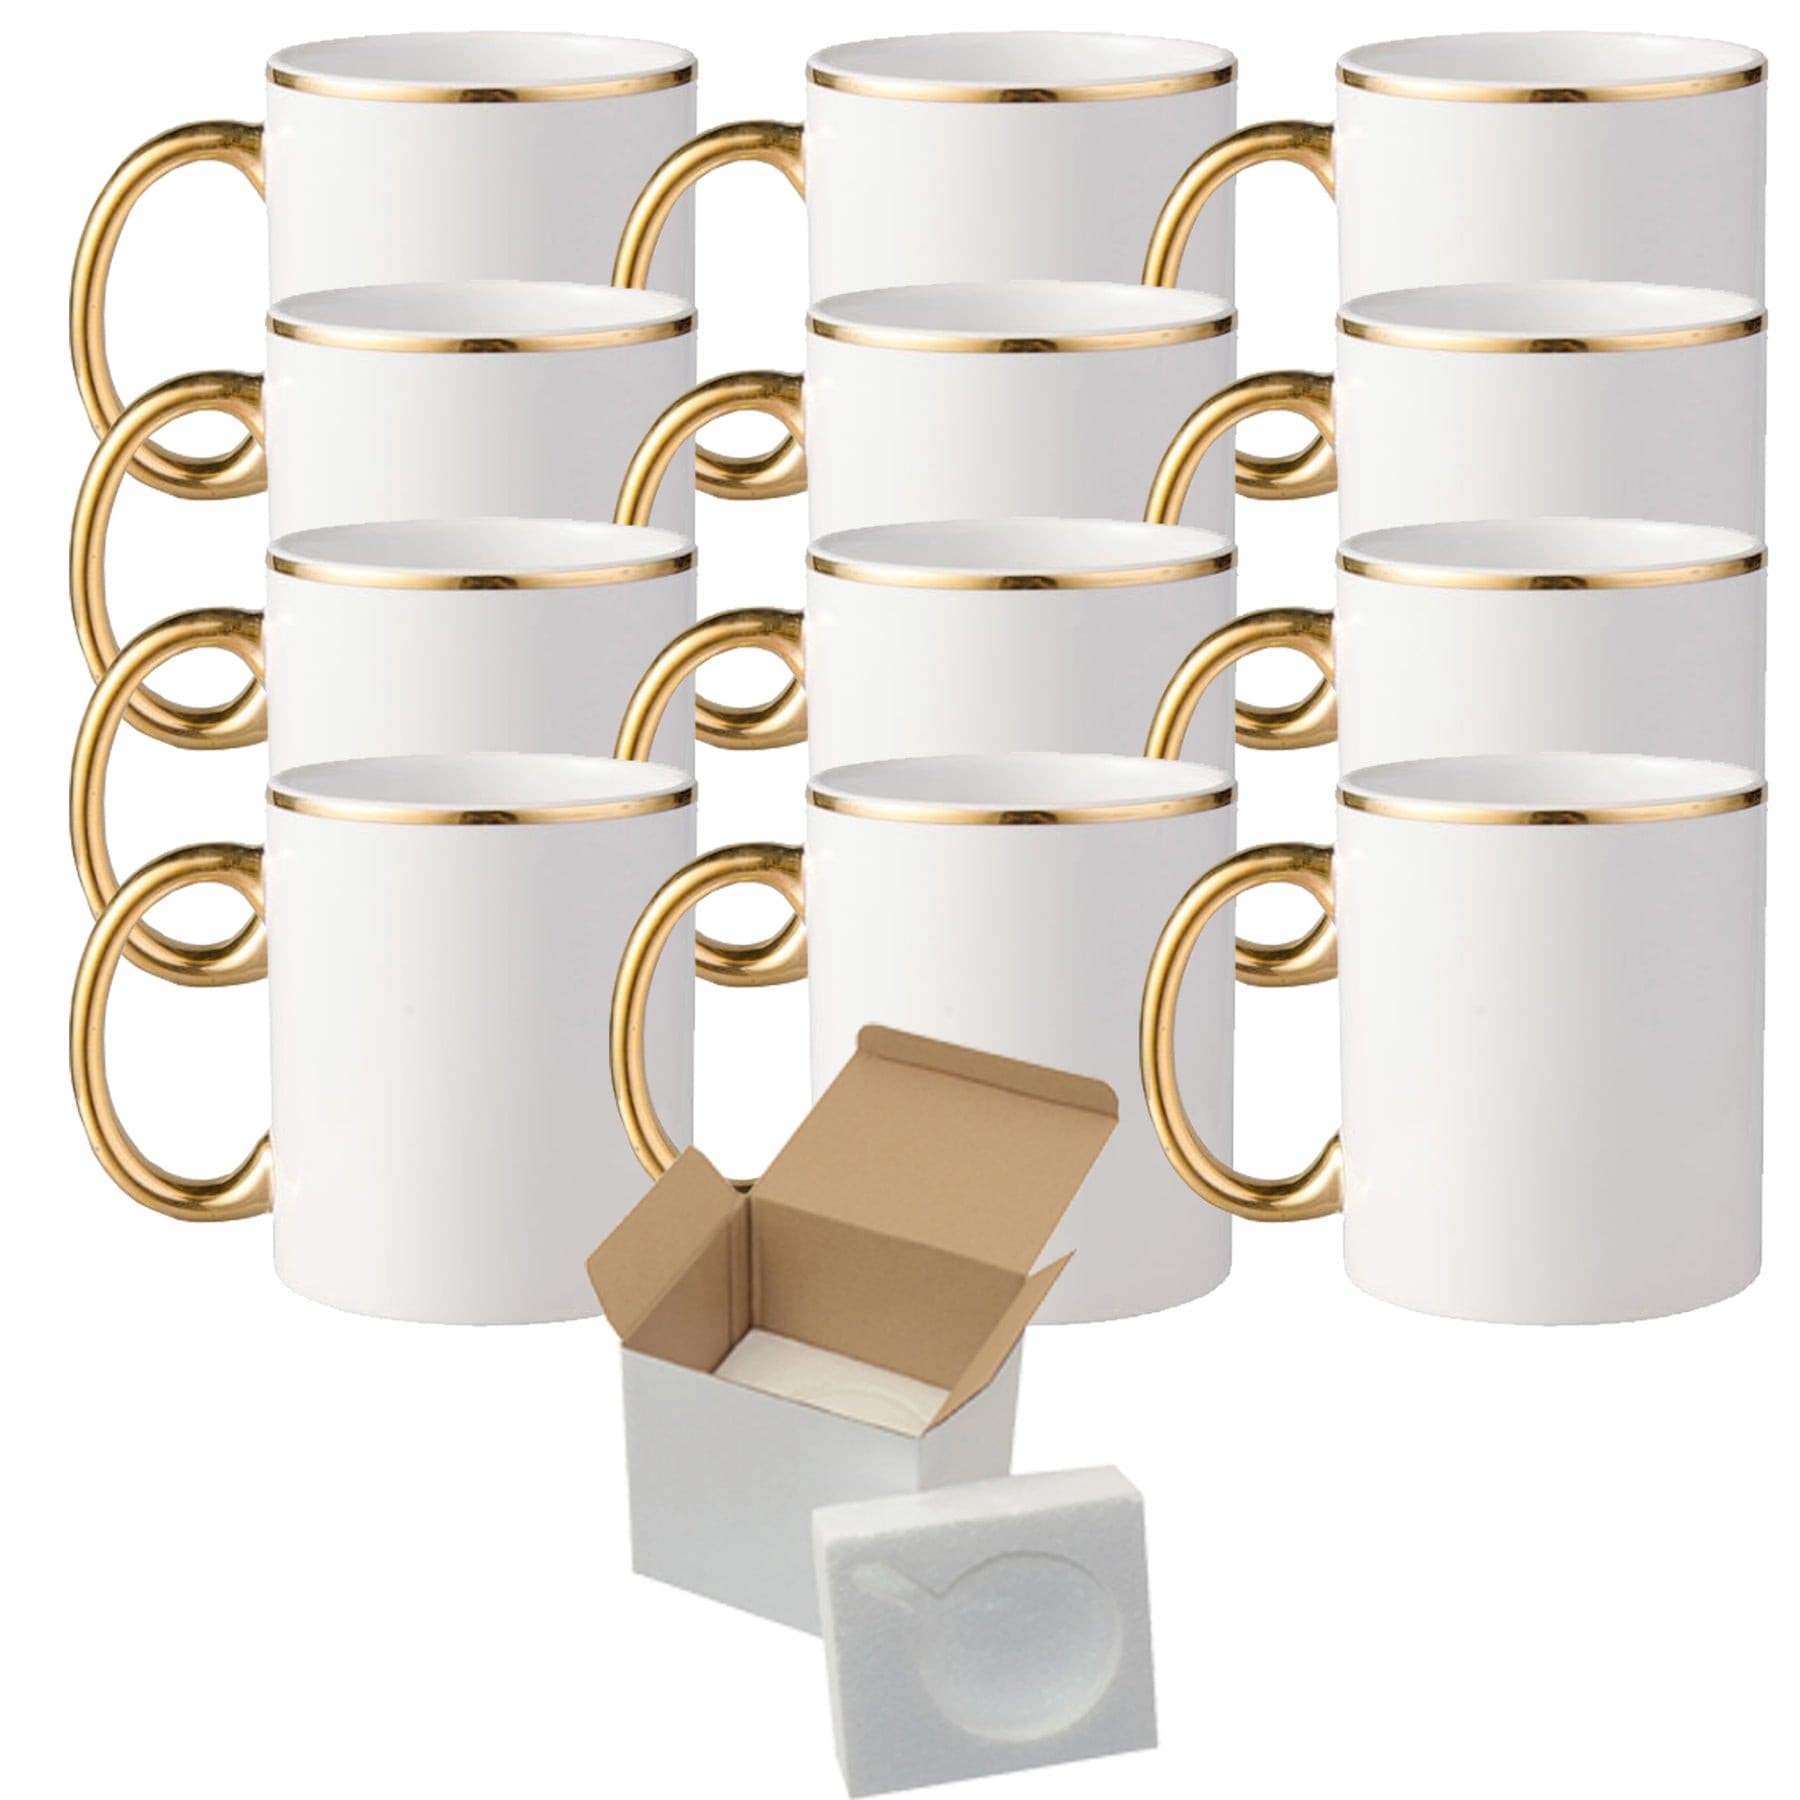 El Grande Wholesale 15 oz Sublimation Mugs